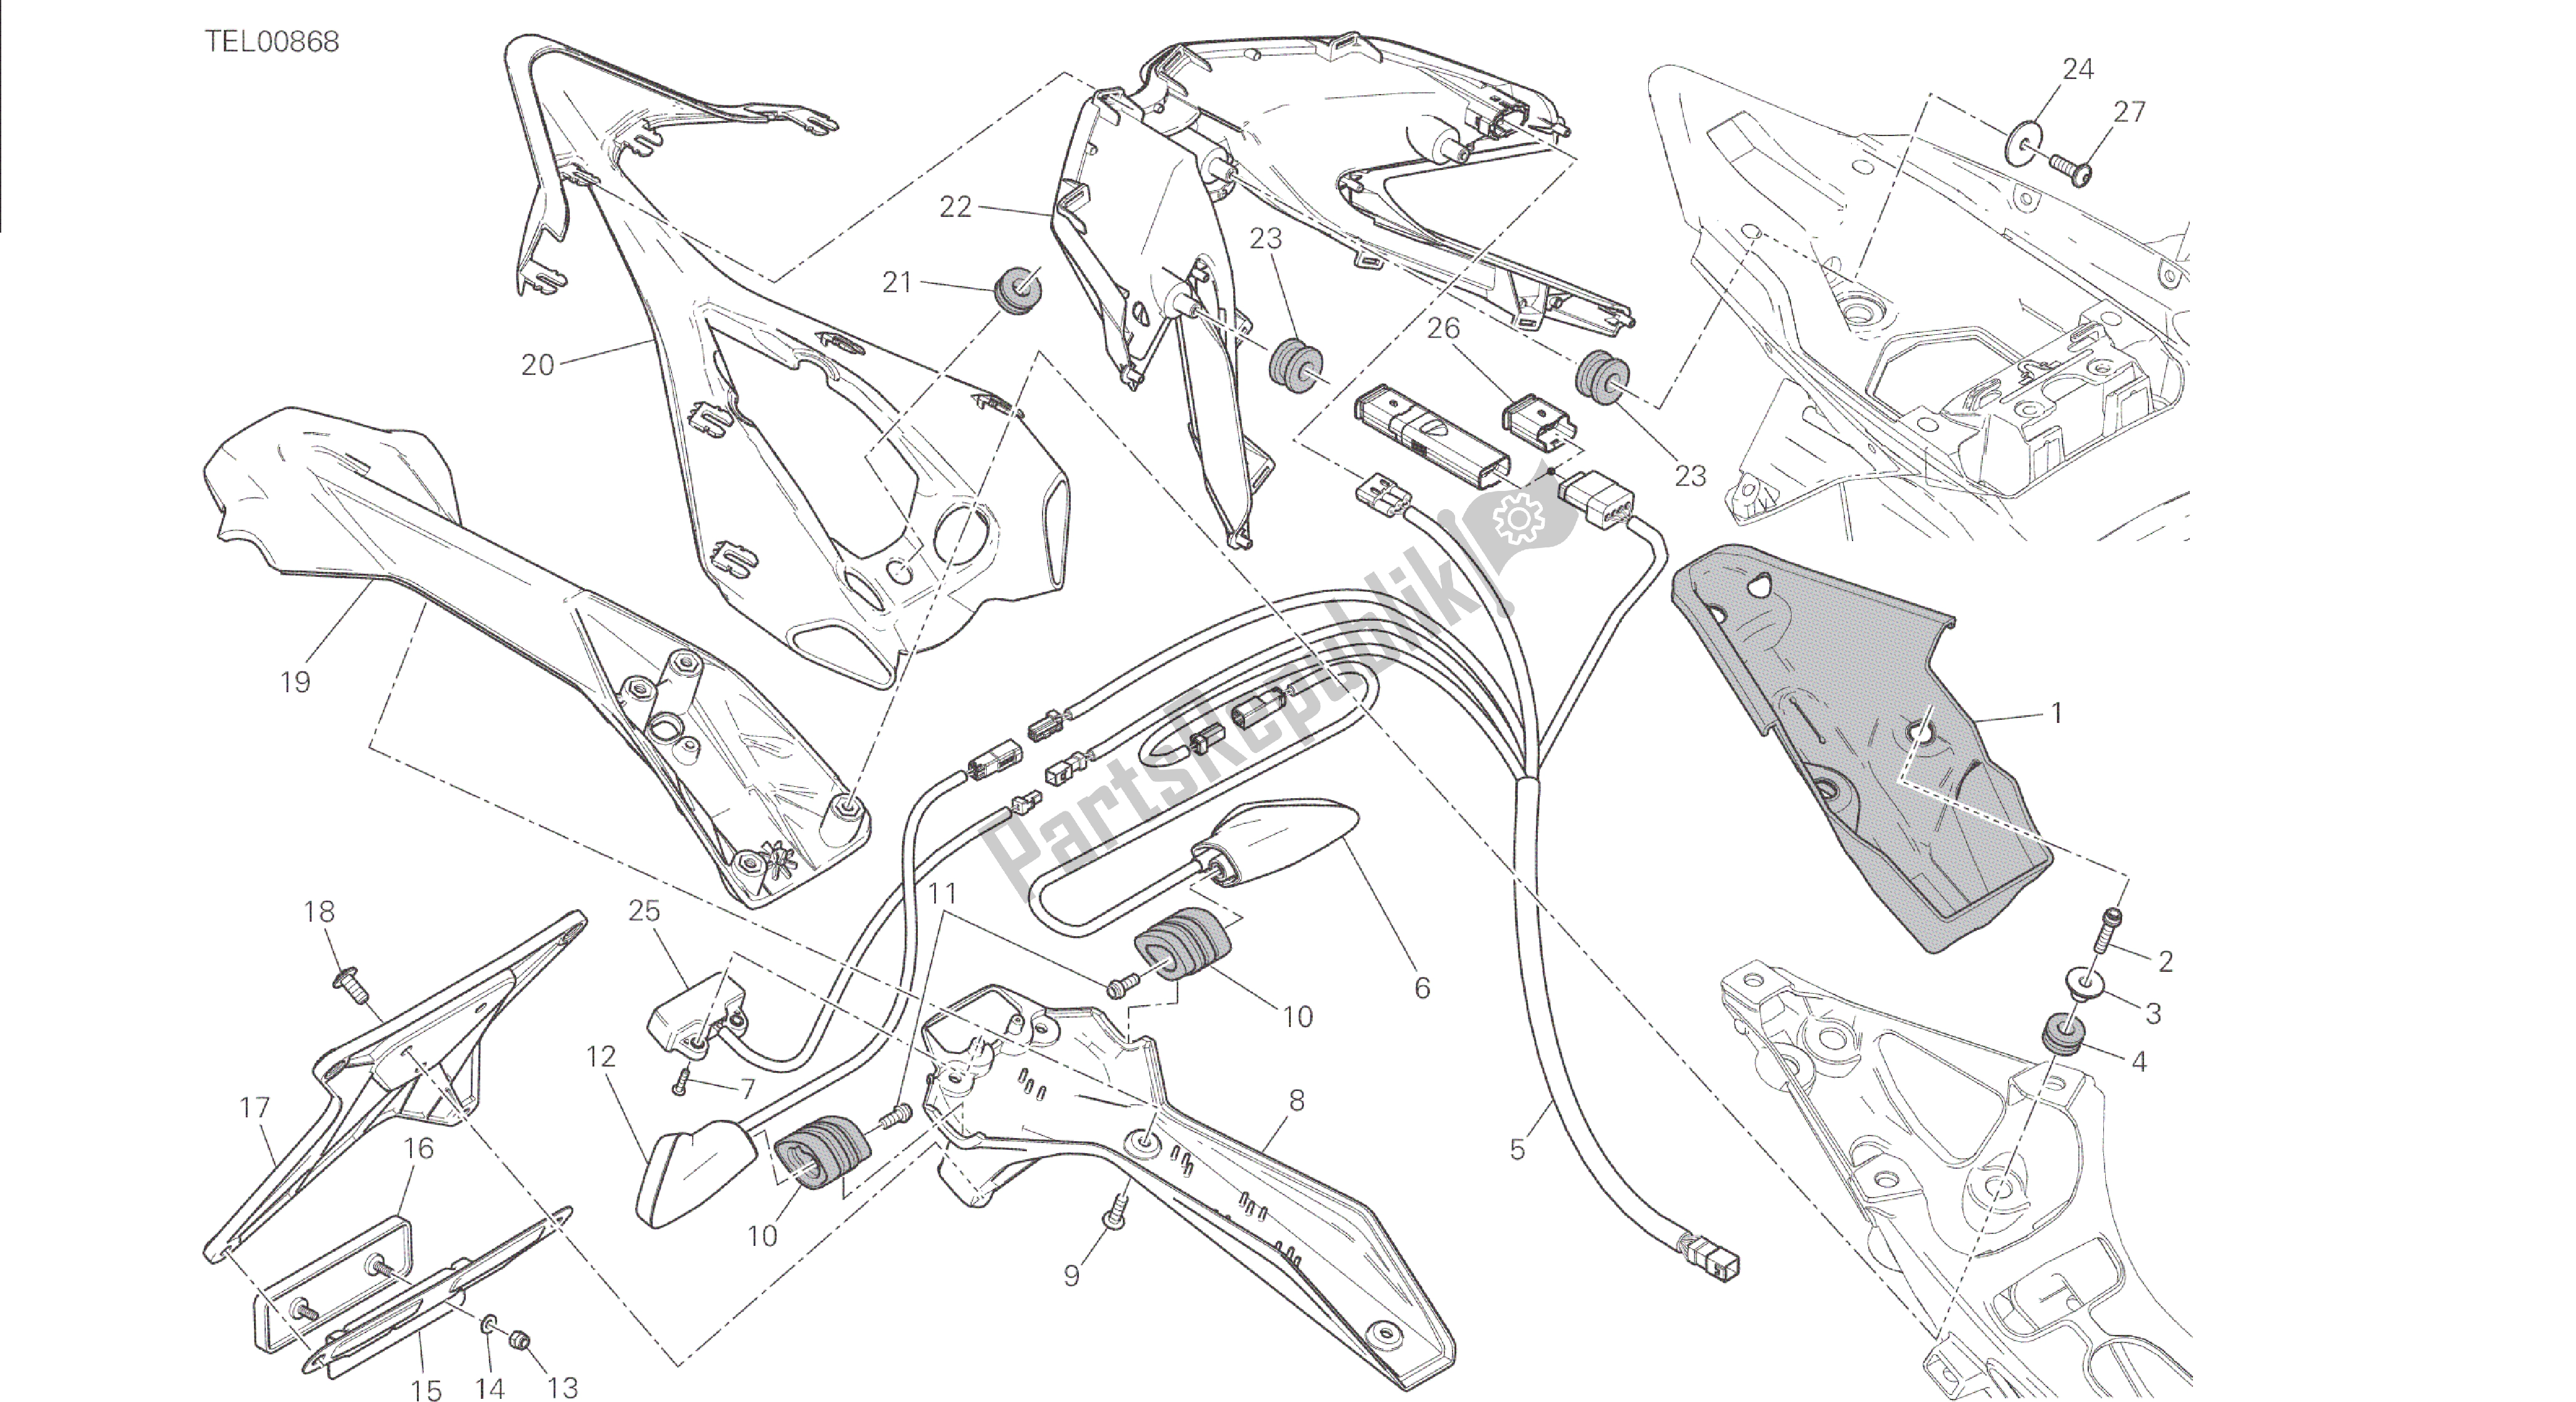 Alle onderdelen voor de Tekening 27a - Kentekenplaathouder - Achterlicht [mod: 1299; Xst: Eur, Fra, Jap, Twn] Groepsframe van de Ducati Panigale 1299 2015